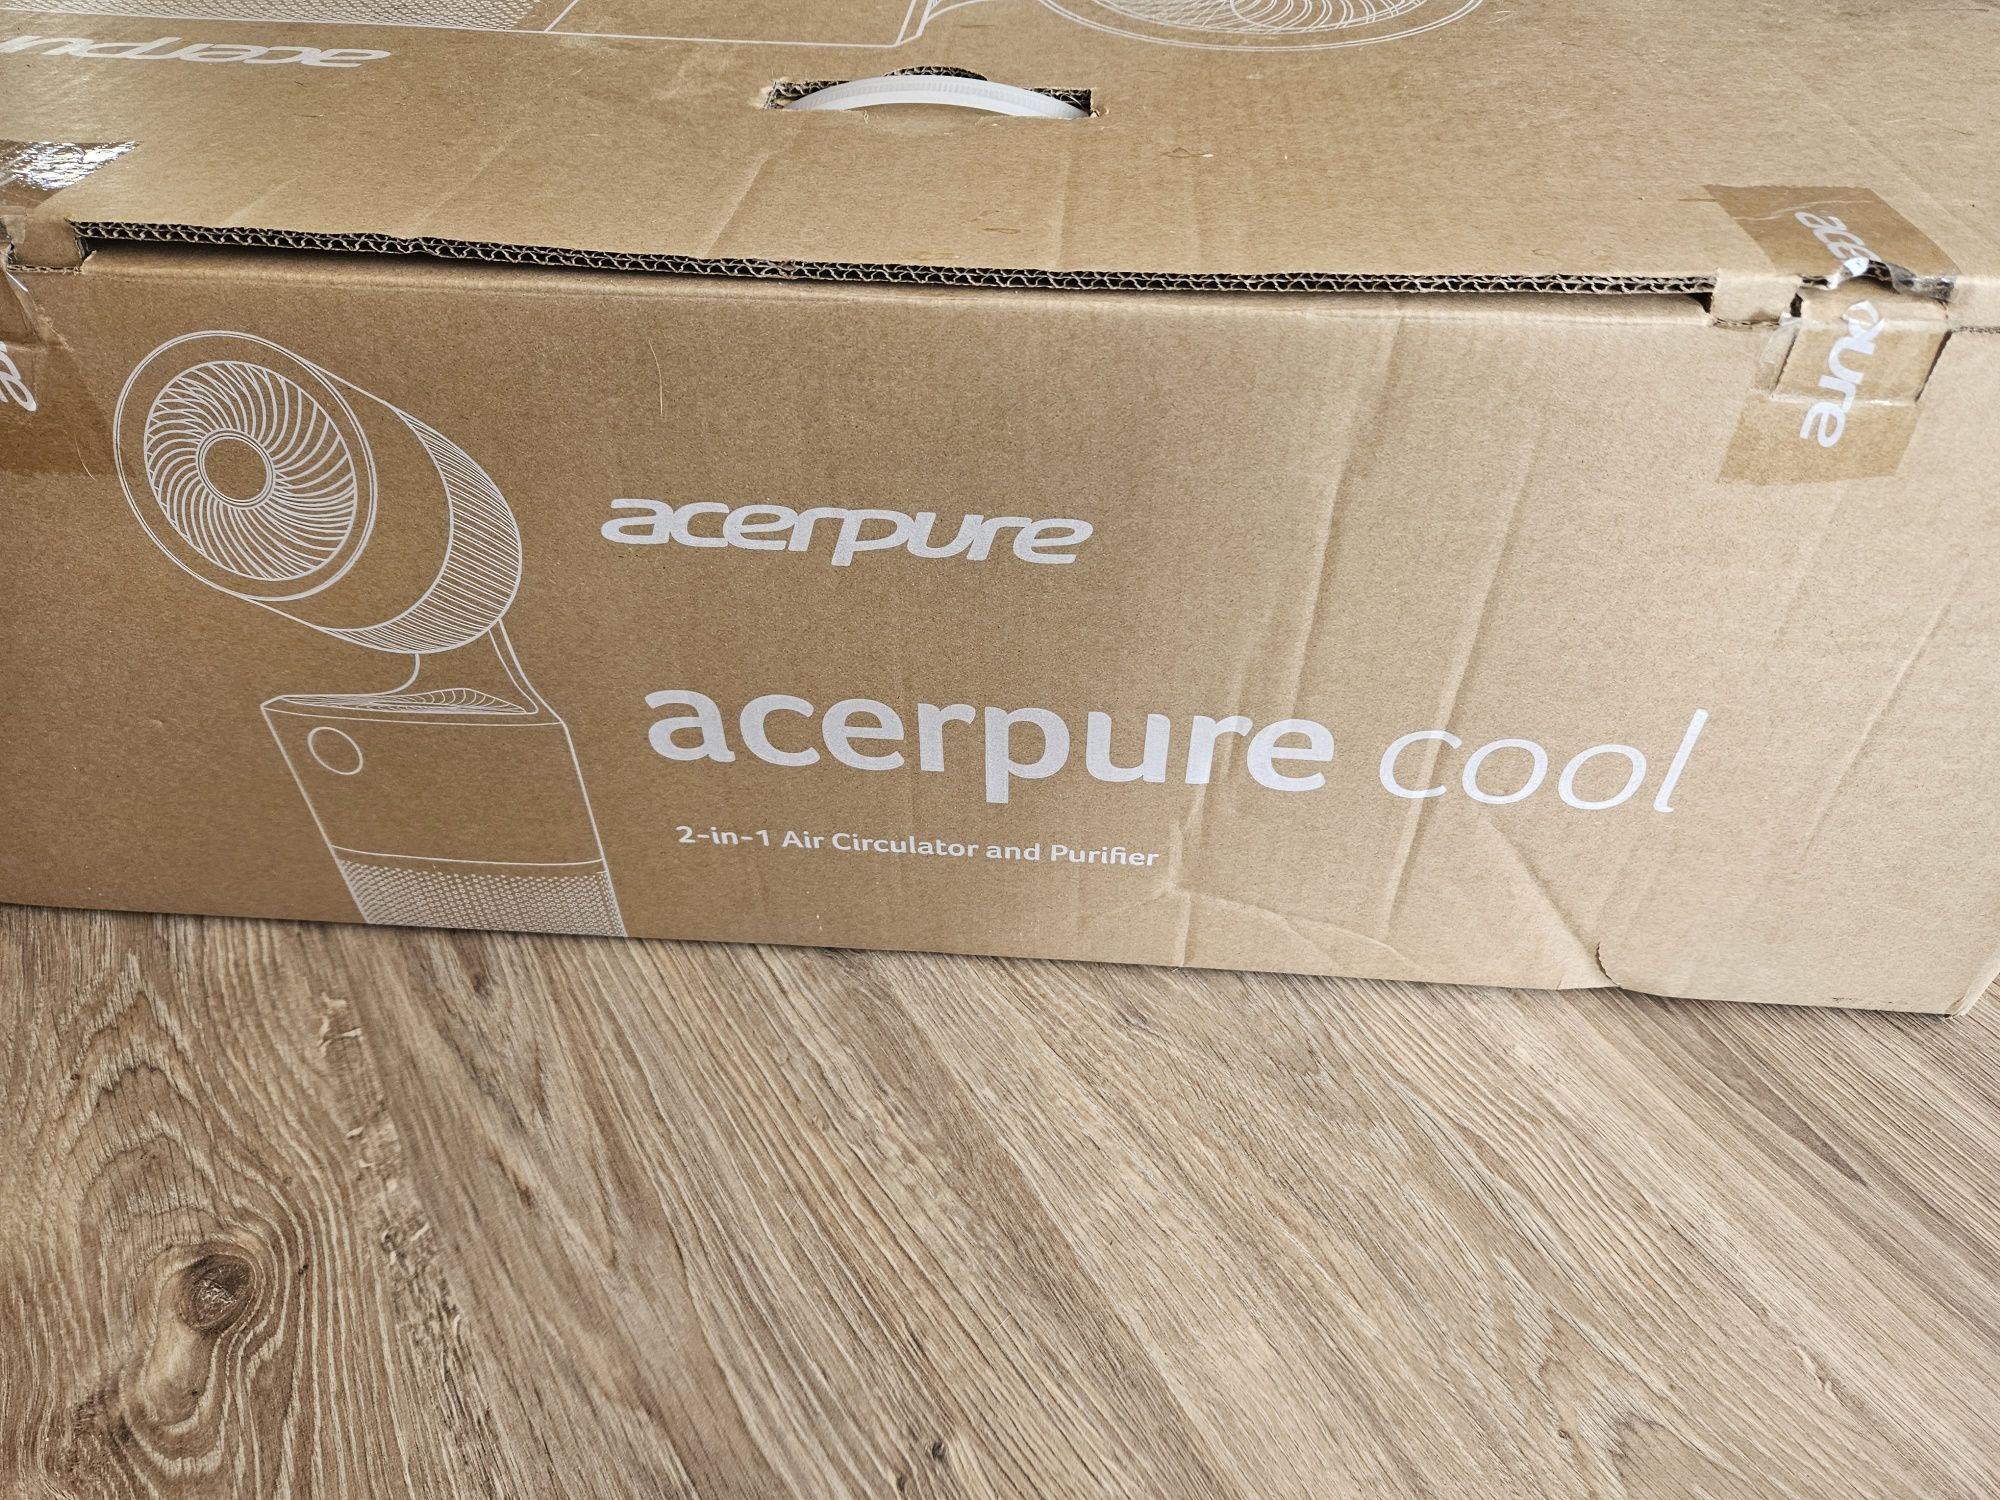 Odświeżacz, oczyszczacz powietrza  Acerpure cool 2-in-1 Air Circulator